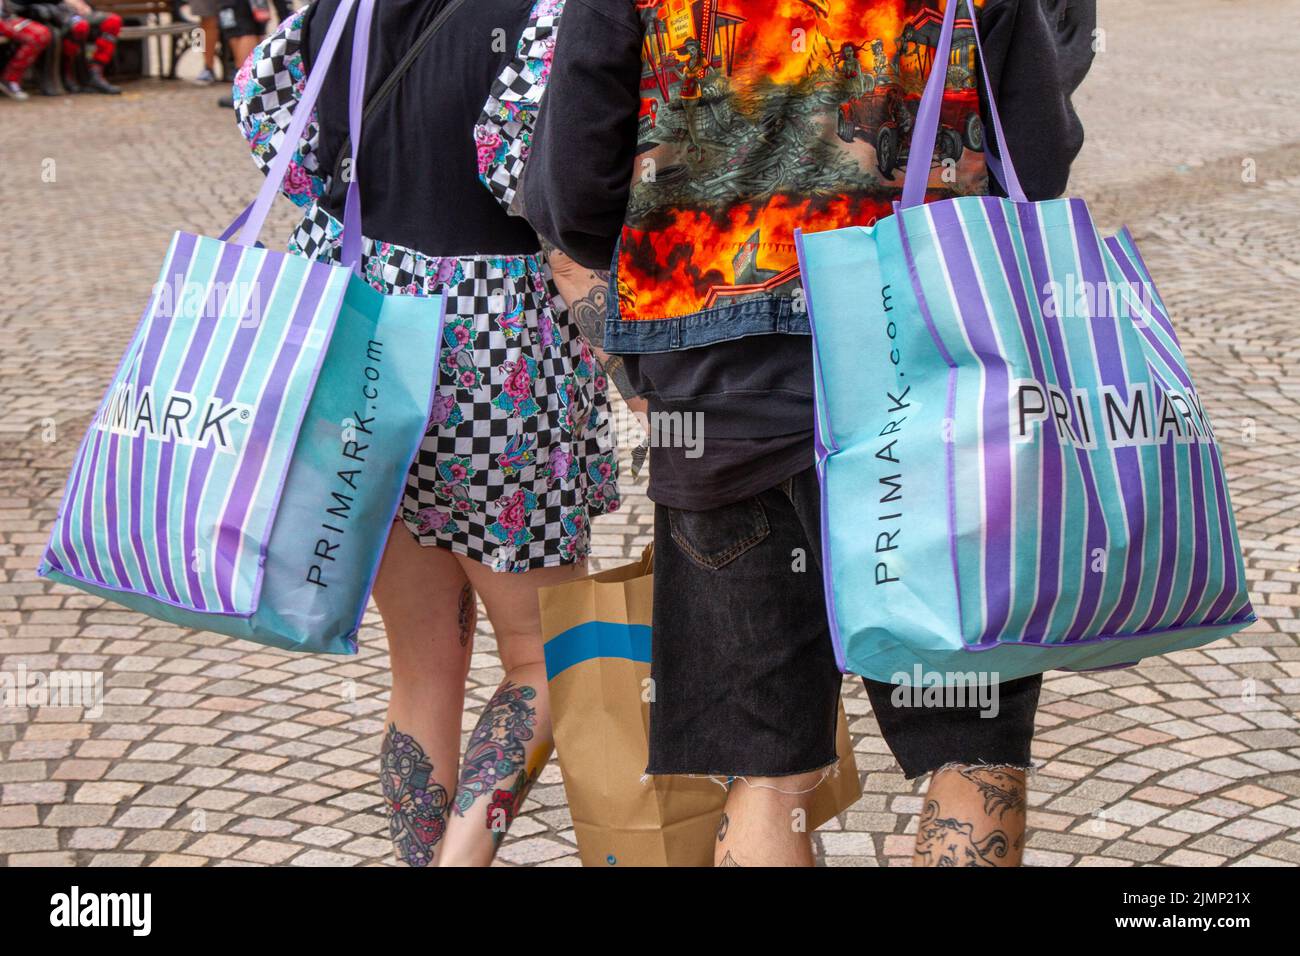 Compras de Punk Rockers tatuadas, llevando bolsas Striped PRIMARK en Blackpool, Reino Unido Foto de stock